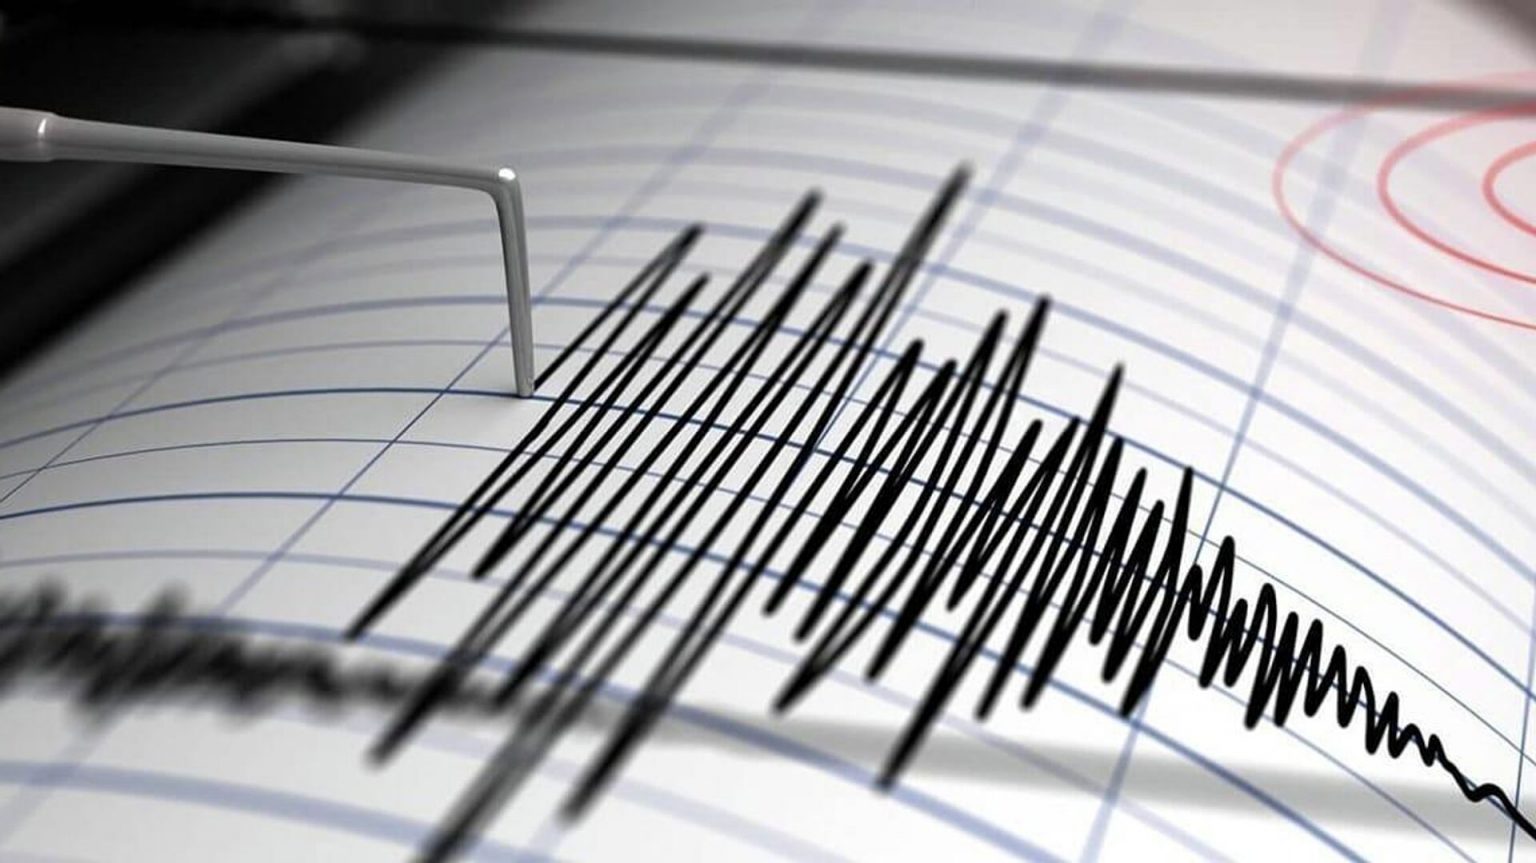 В Турции произошло землетрясение магнитудой 4,4